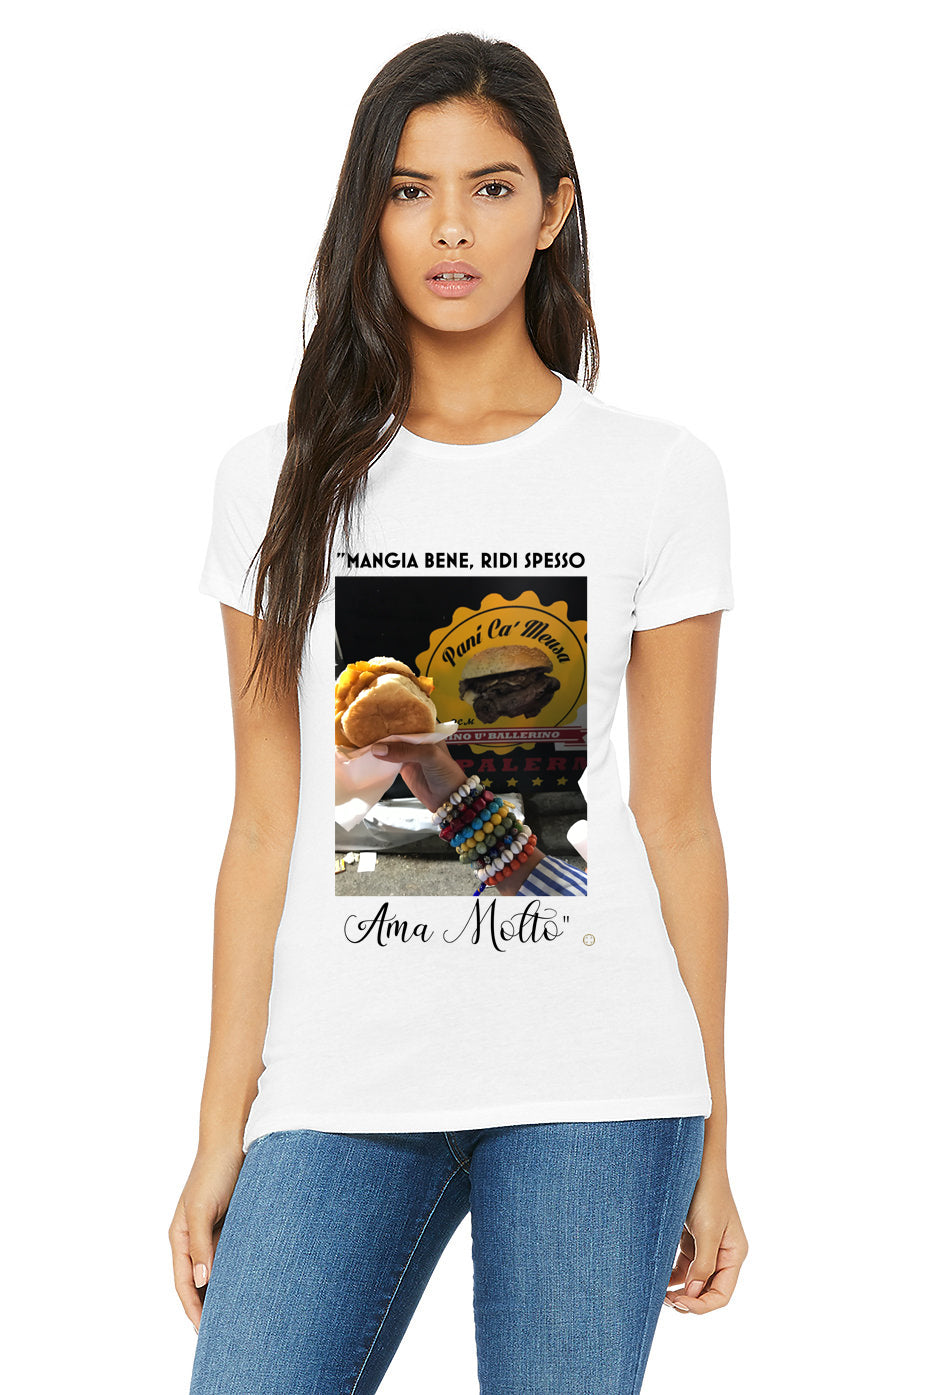 &quot;Mangia Bene, Ridi Spesso Ama Motto&quot; T-Shirt - Oriana Lamarca LLC